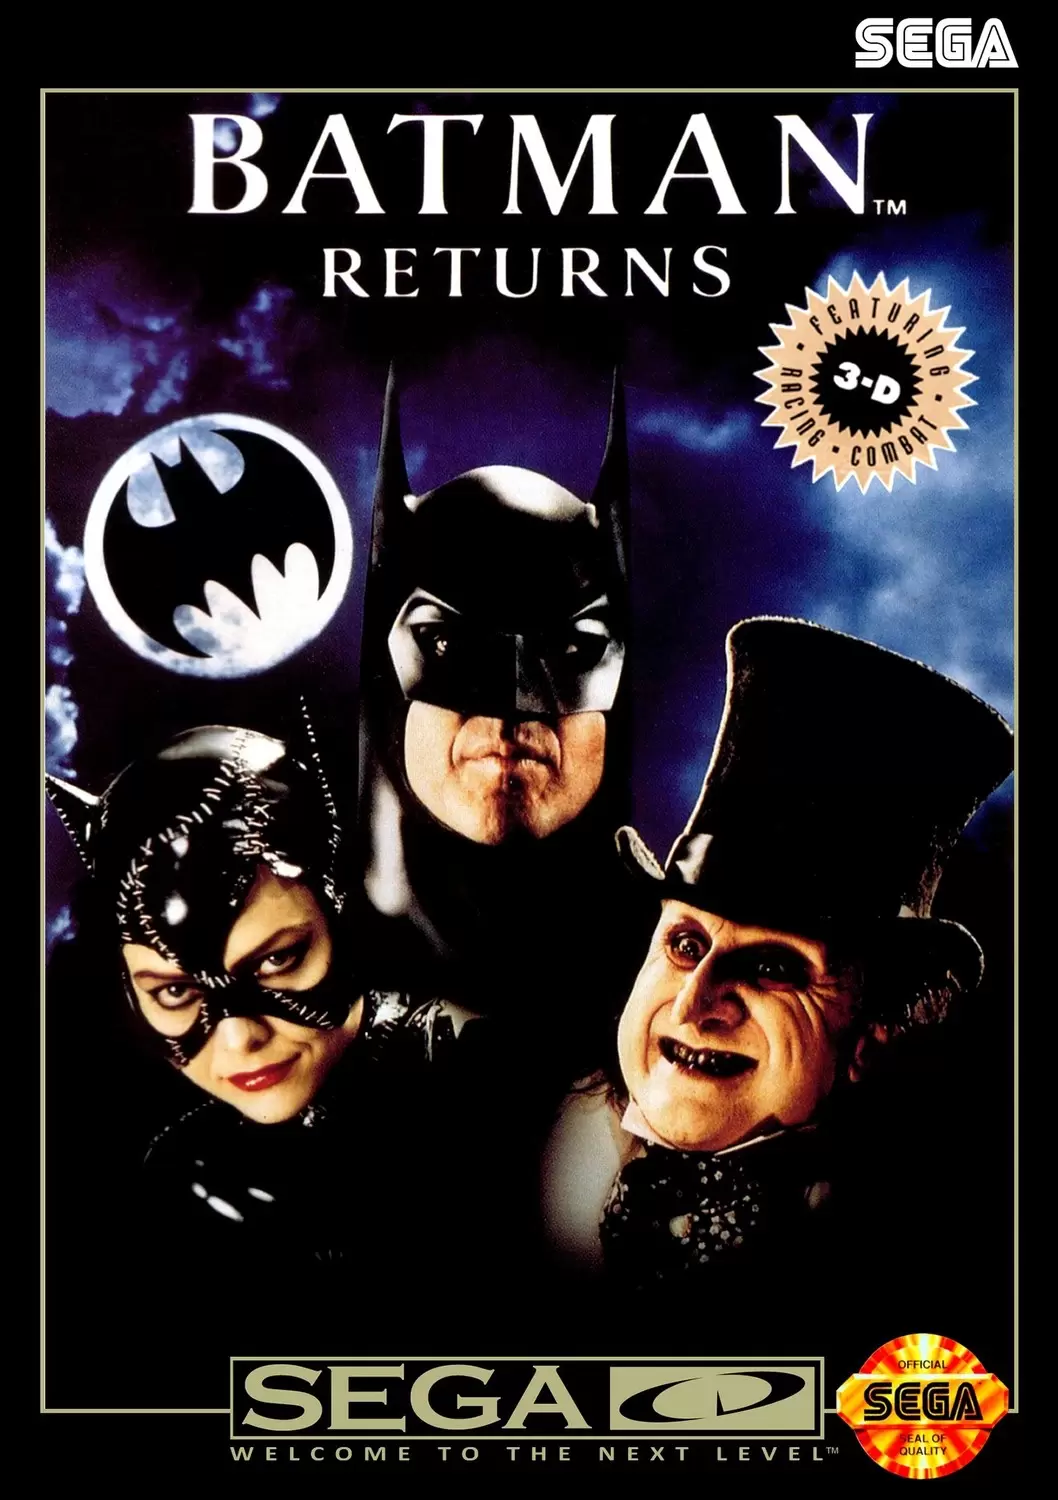 SEGA Mega CD Games - Batman Returns